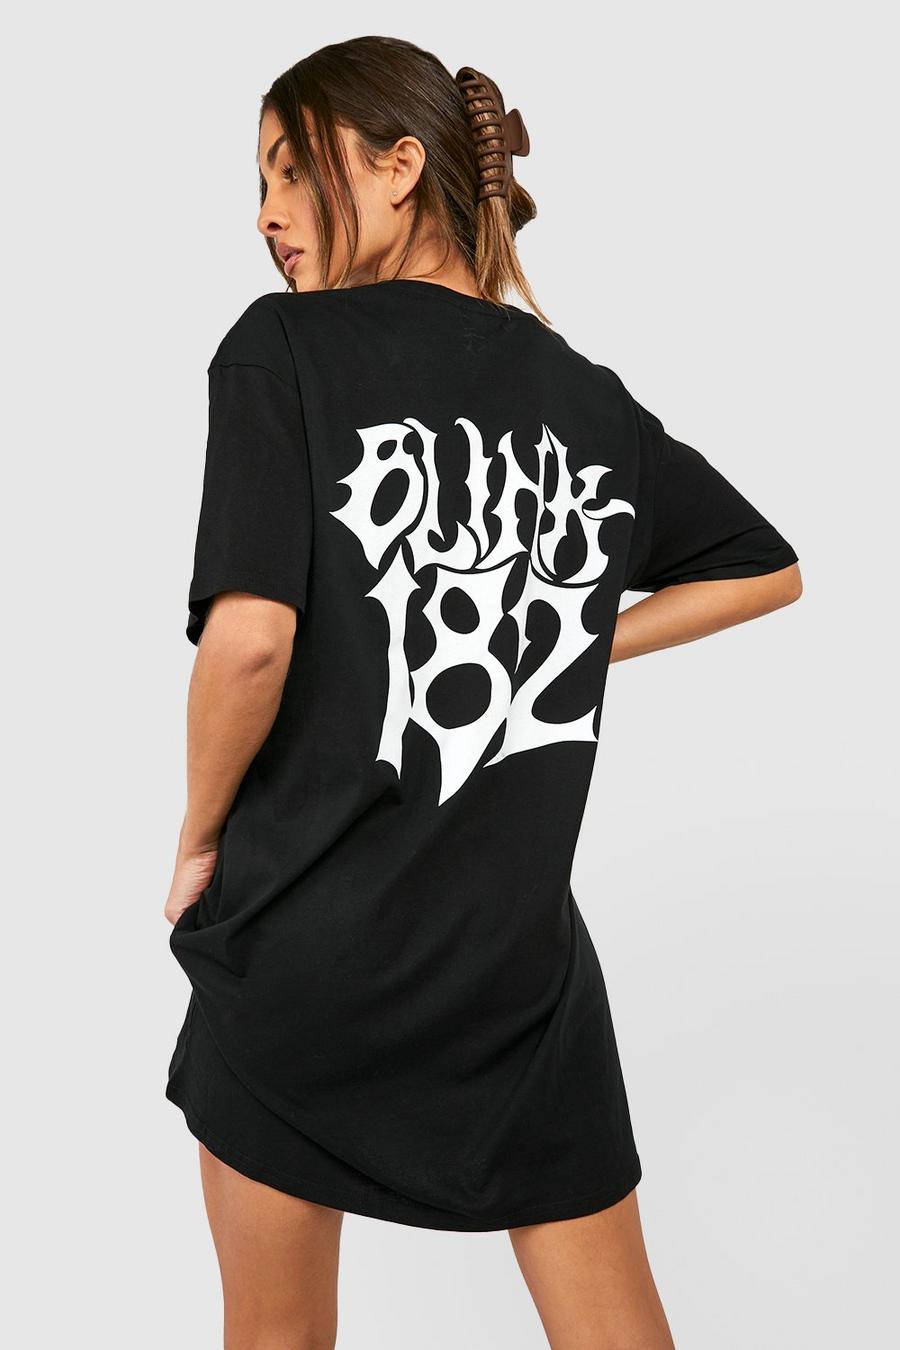 Black Blink 182 License Back Graphic T-Shirt Dress image number 1